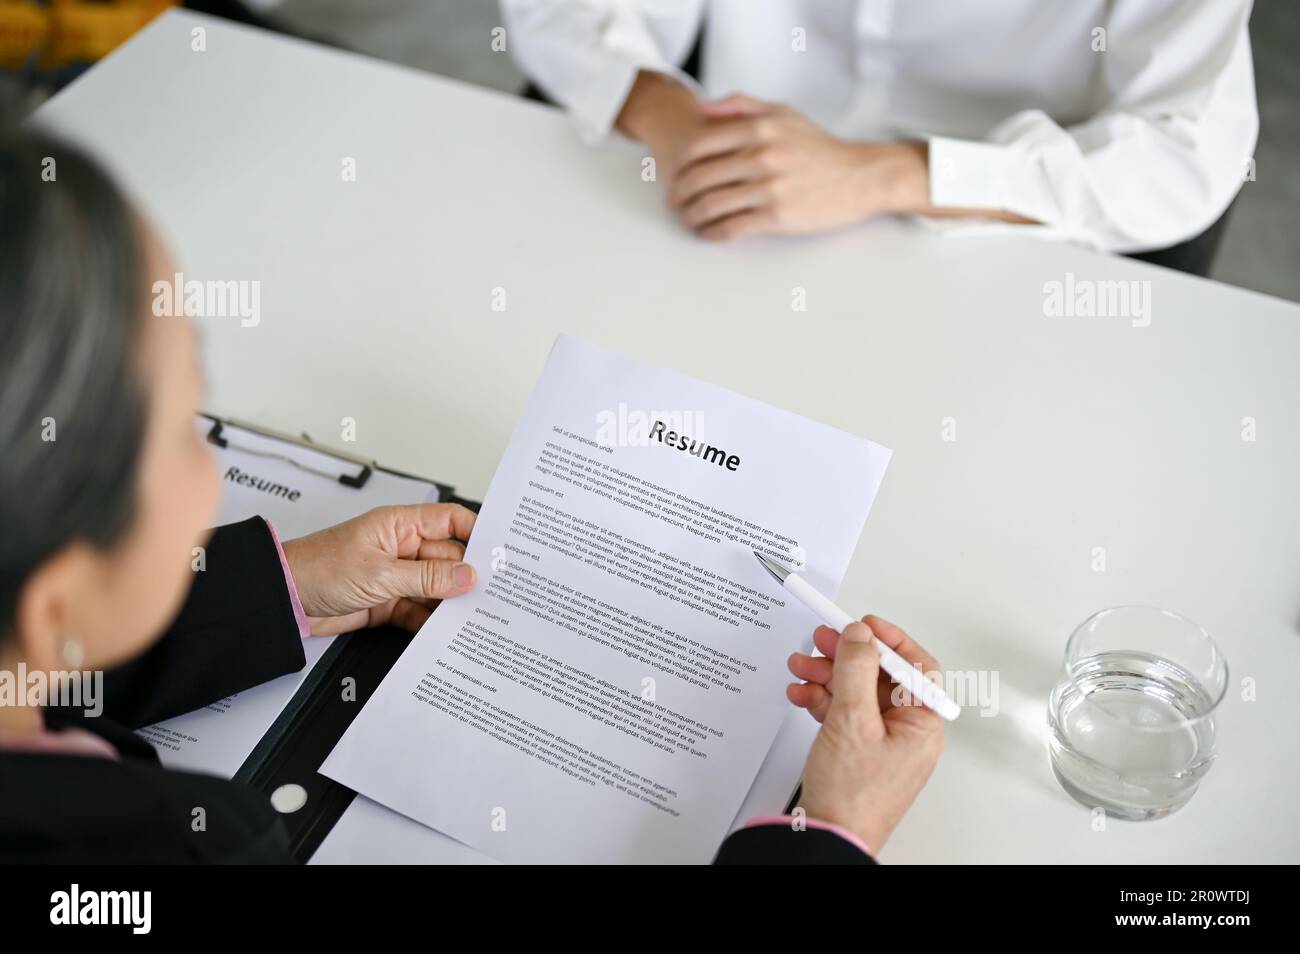 Vue rapprochée d'une femme d'affaires professionnelle senior lisant le curriculum vitae d'un candidat et posant une question pendant une entrevue d'emploi. Banque D'Images